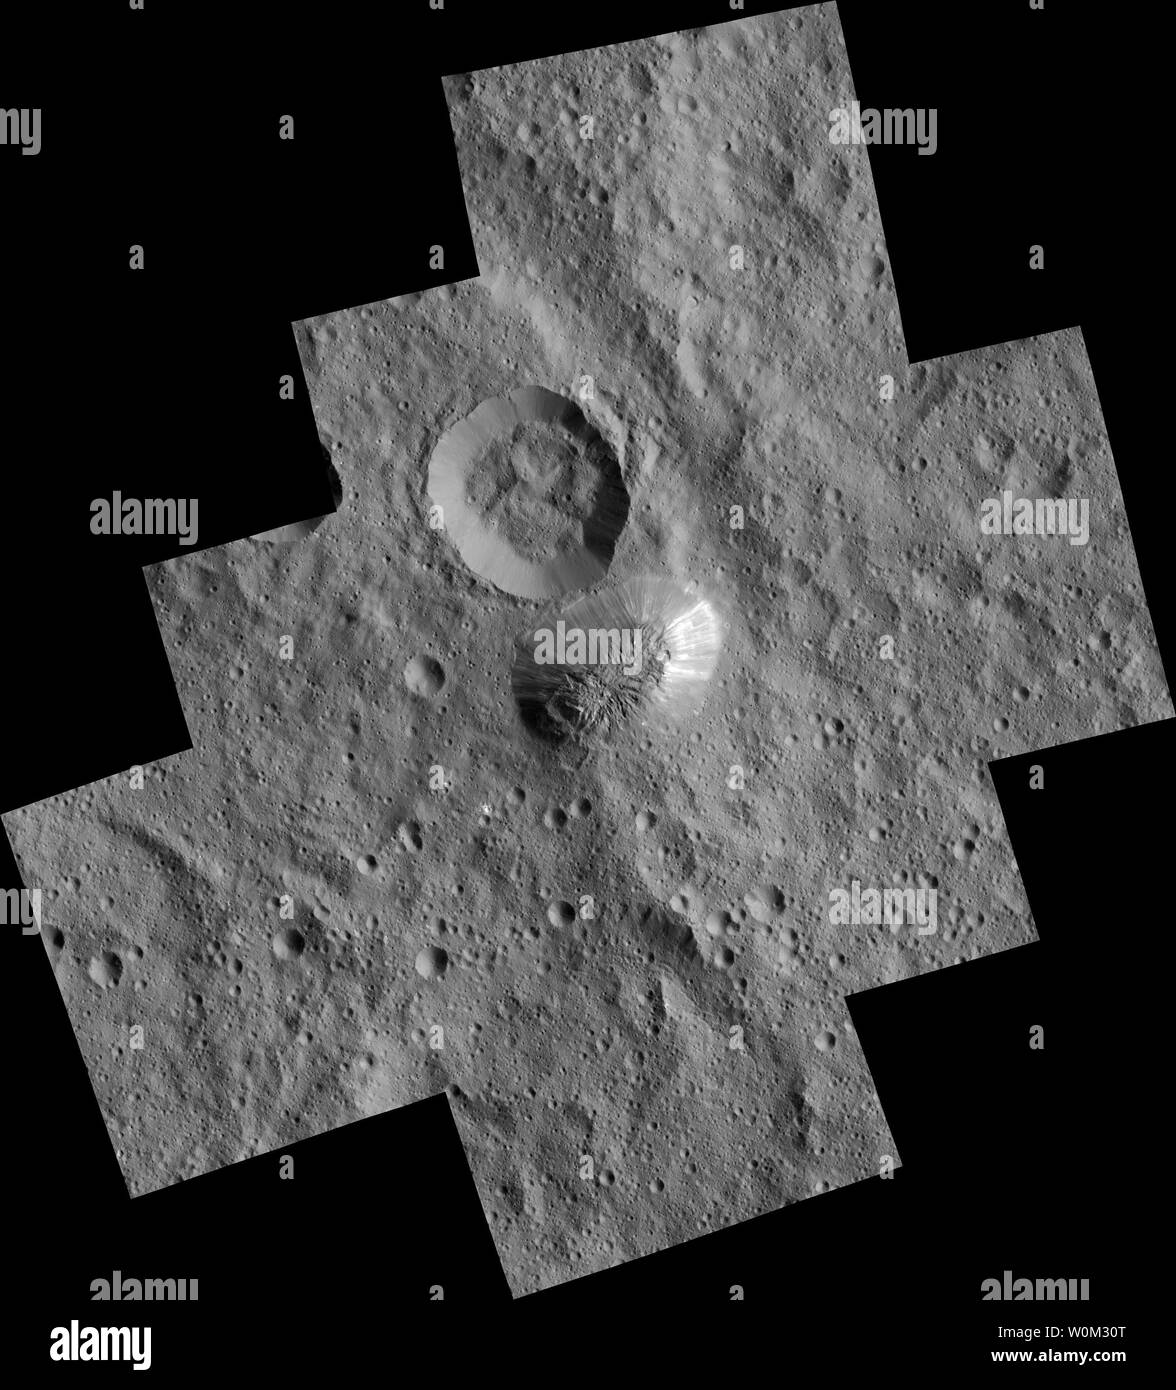 Il misterioso mountain Ahuna Mons è visto in questo mosaico di immagini dalla NASA Dawn navicelle spaziali. Dawn ha preso queste immagini dalla sua bassa altitudine orbita di mappatura nel dicembre 2015. La risoluzione delle immagini componenti è di 120 piedi (35 metri) per pixel. Sul suo lato più ripida, questa montagna è di circa 3 miglia (5 chilometri) alta, con un diametro di circa 12 miglia (20 chilometri). Il 6 marzo 2015, NASA Dawn navicella spaziale fatto scivolare dolcemente in orbita attorno a Cerere, il più grande corpo nella fascia di asteroidi tra Marte e Giove. UPI Foto Stock